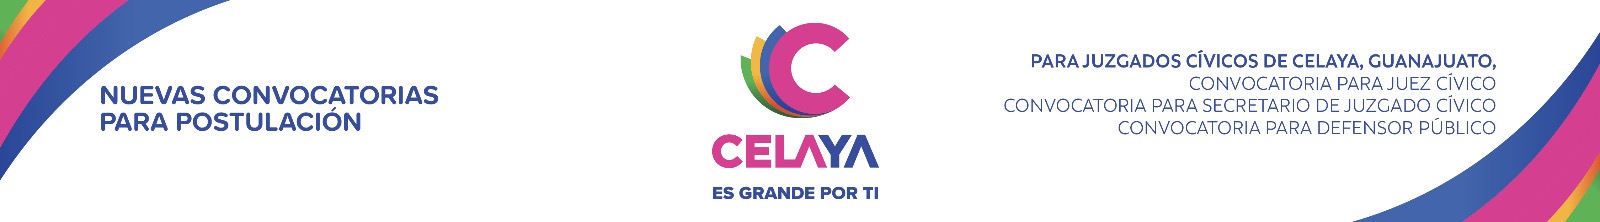 NUEVAS CONVOCATORIAS PARA POSTULACIÓN Para Juzgados Cívicos de Celaya, Guanajuato.